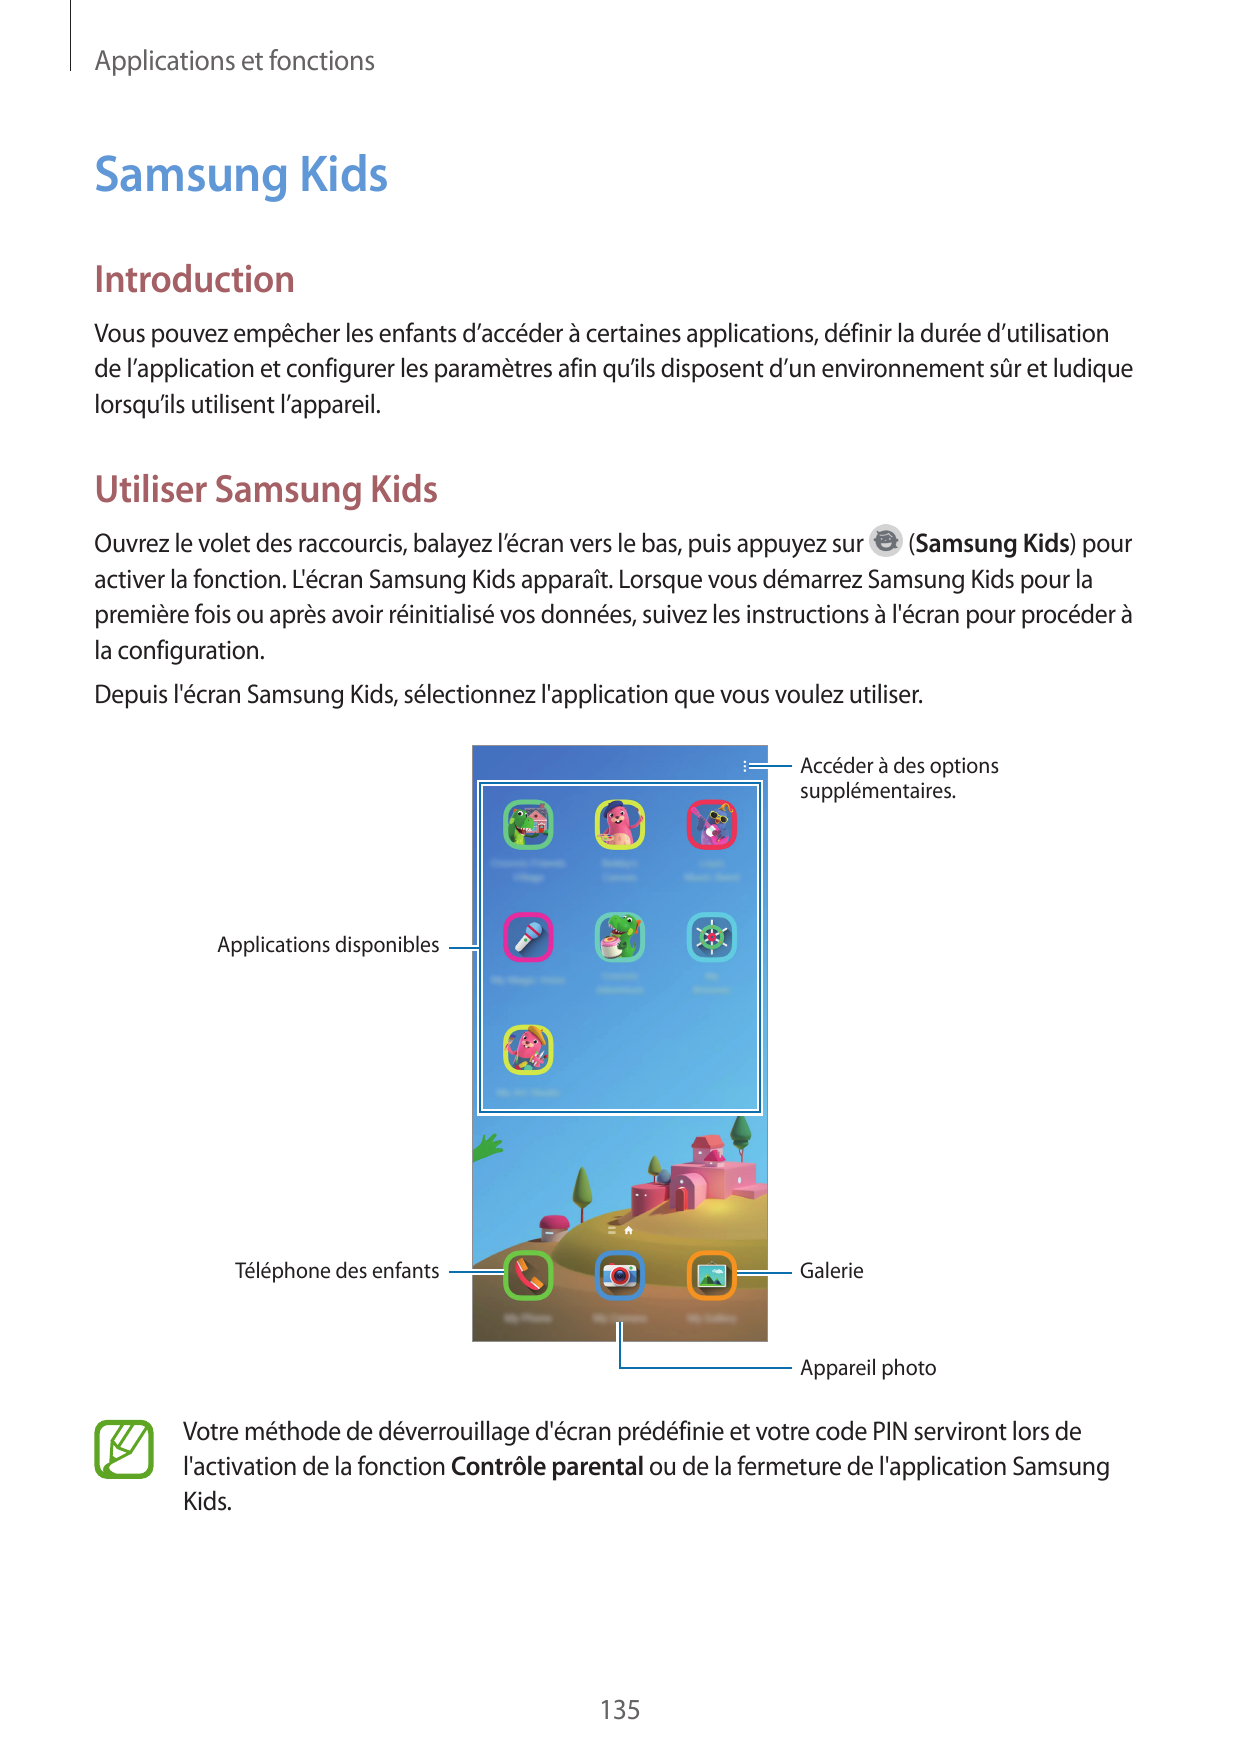 Applications et fonctionsSamsung KidsIntroductionVous pouvez empêcher les enfants d’accéder à certaines applications, définir la